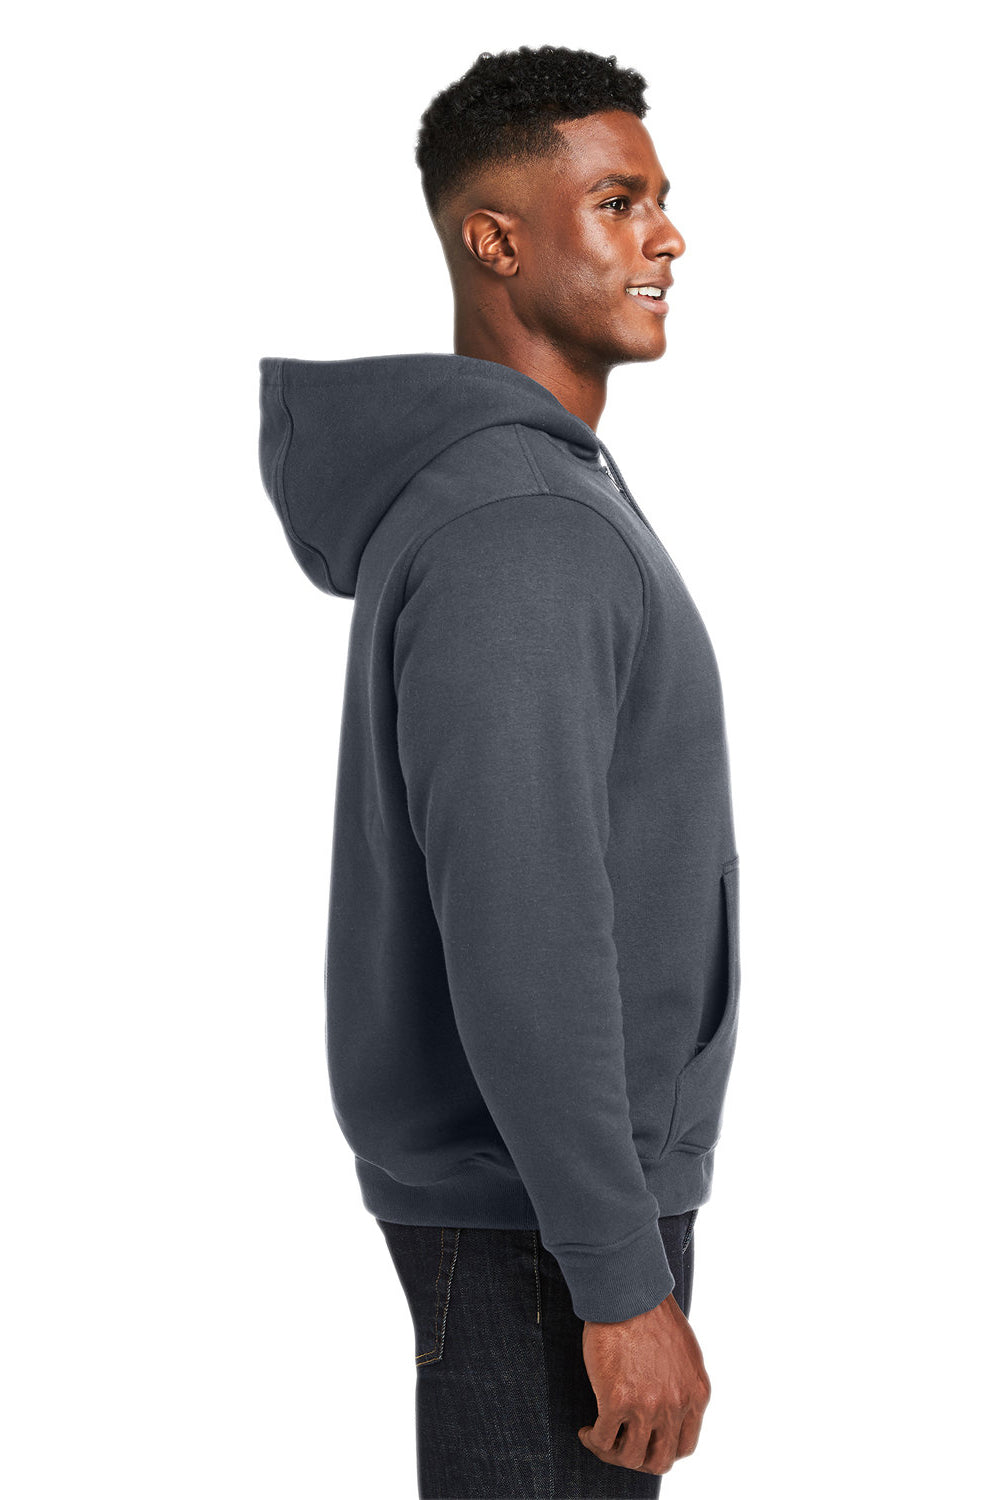 Harriton M711/M711T Mens Climabloc Full Zip Hooded Sweatshirt Hoodie Dark Charcoal Grey Side